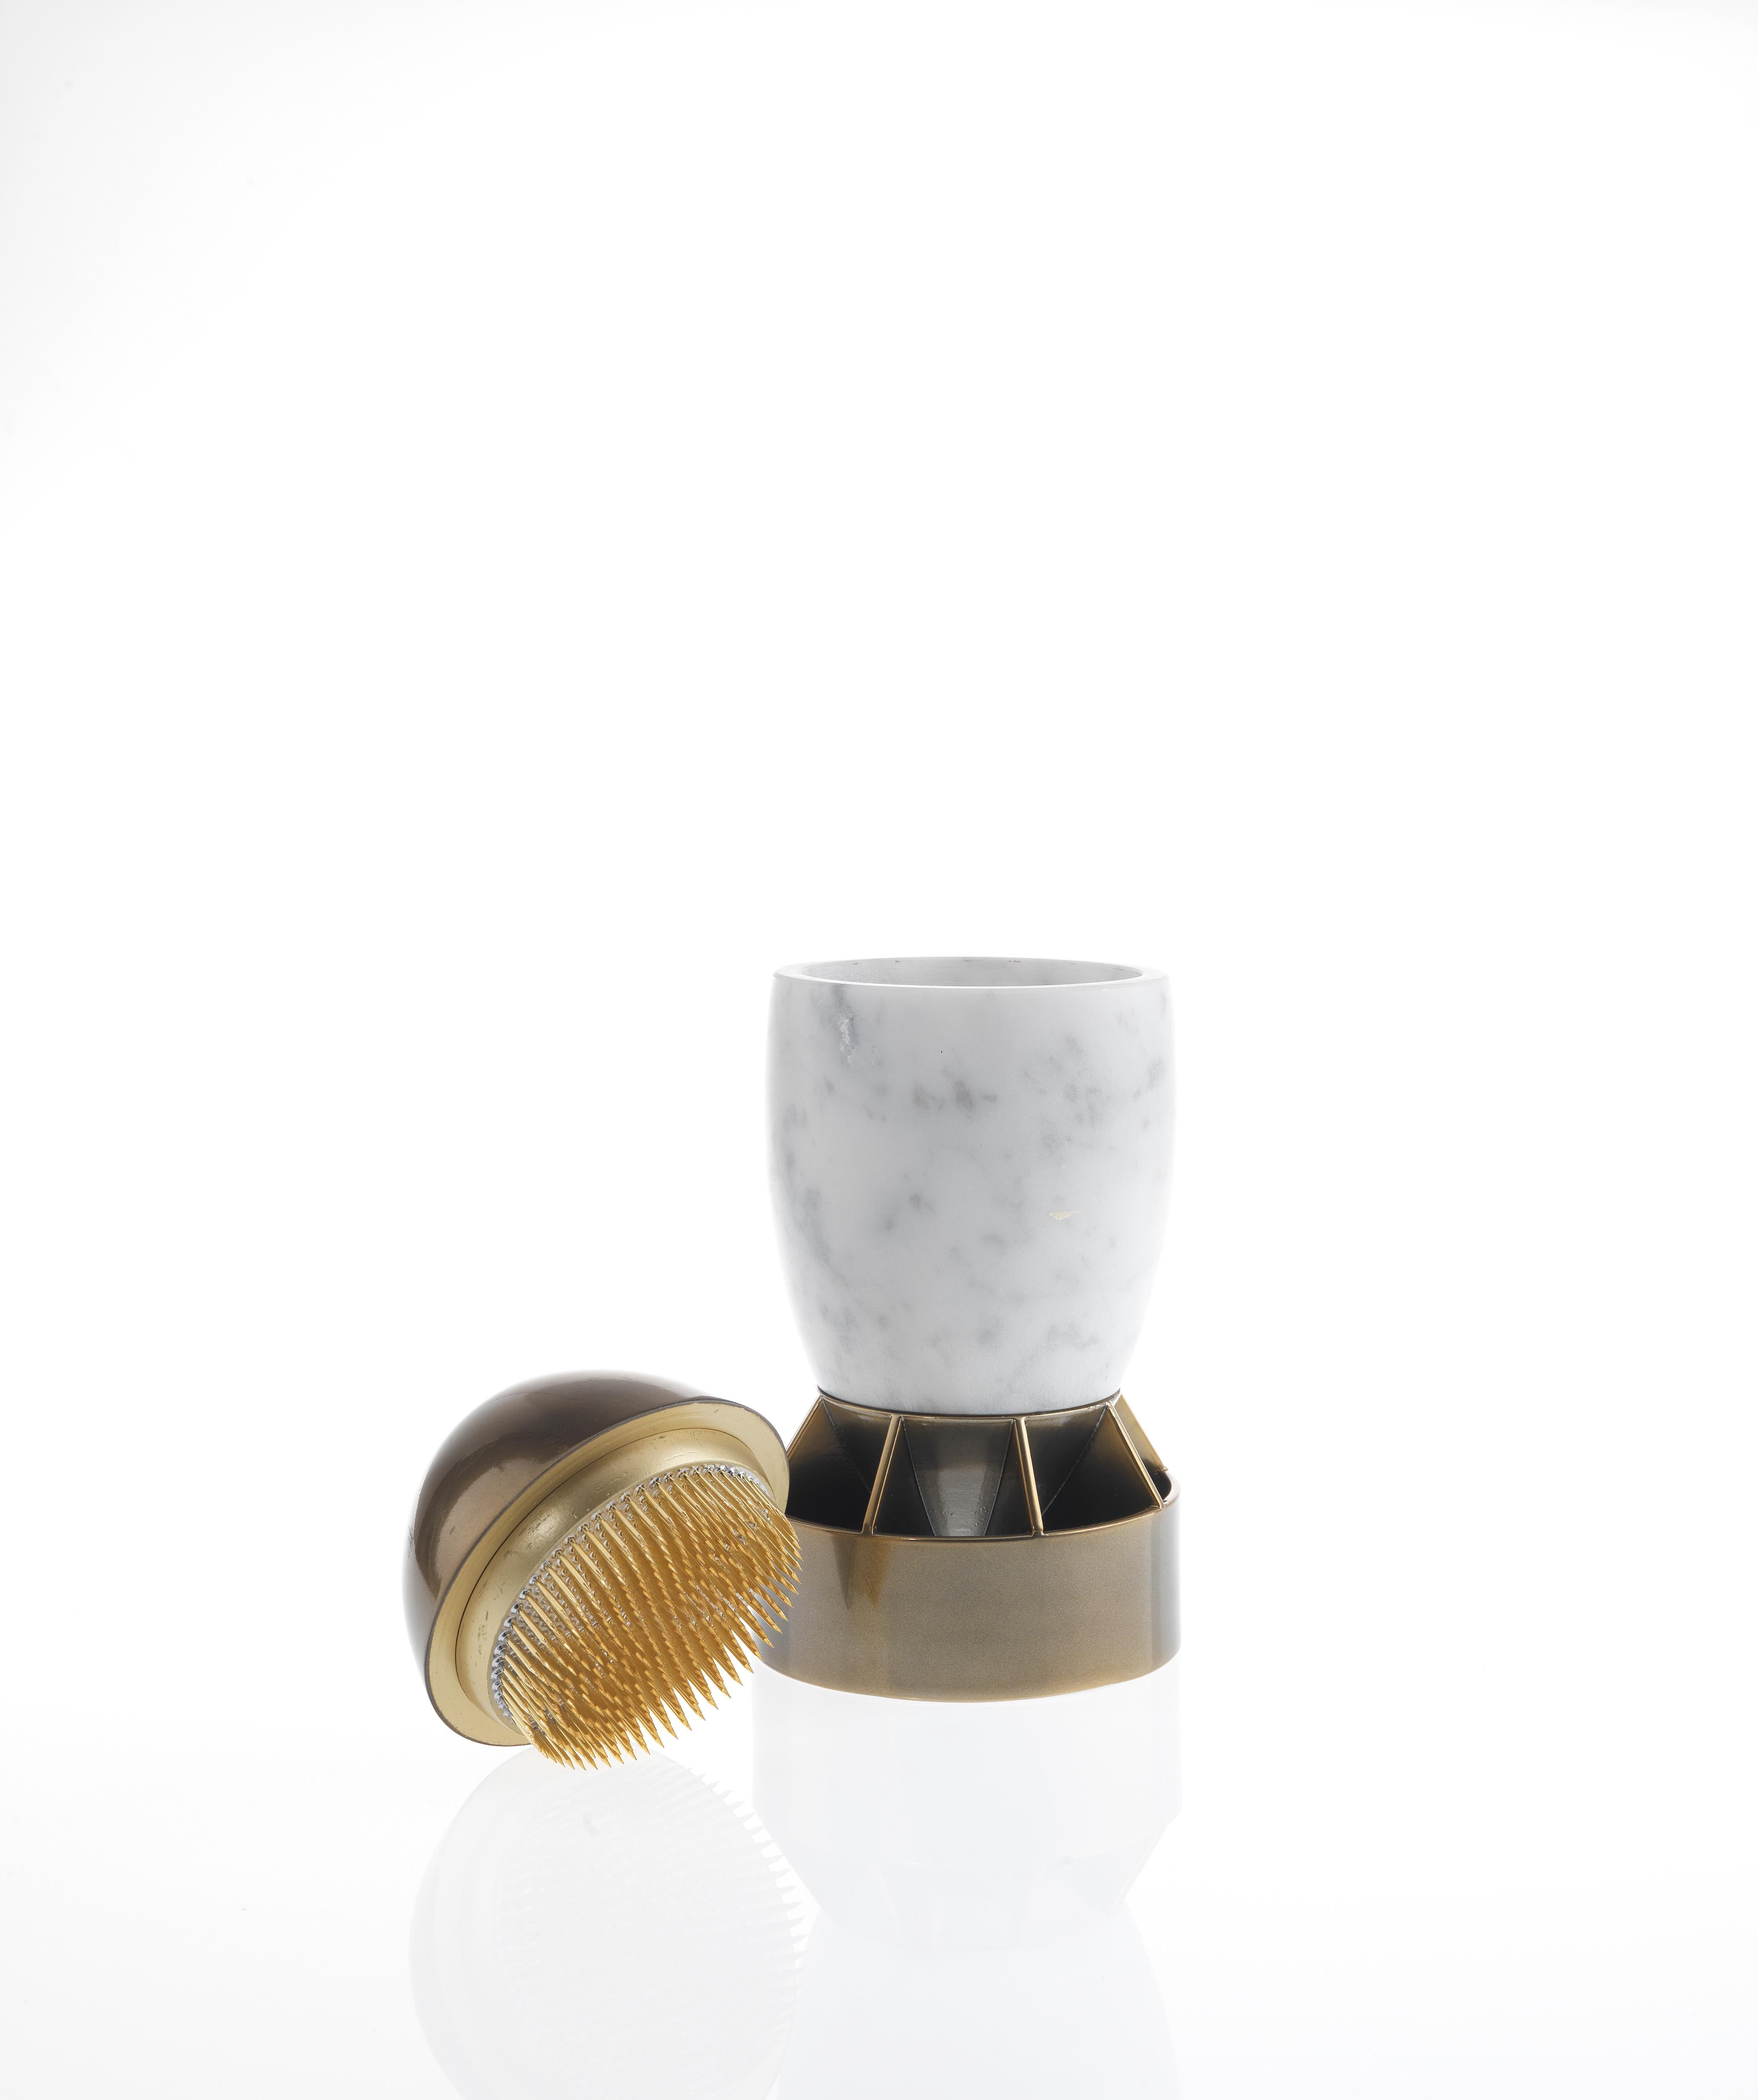 En vente : White (Carrara Marble) Vase Wanda du 21e siècle en marbre et imprimé ABS 3D par Richard Yasmine 2